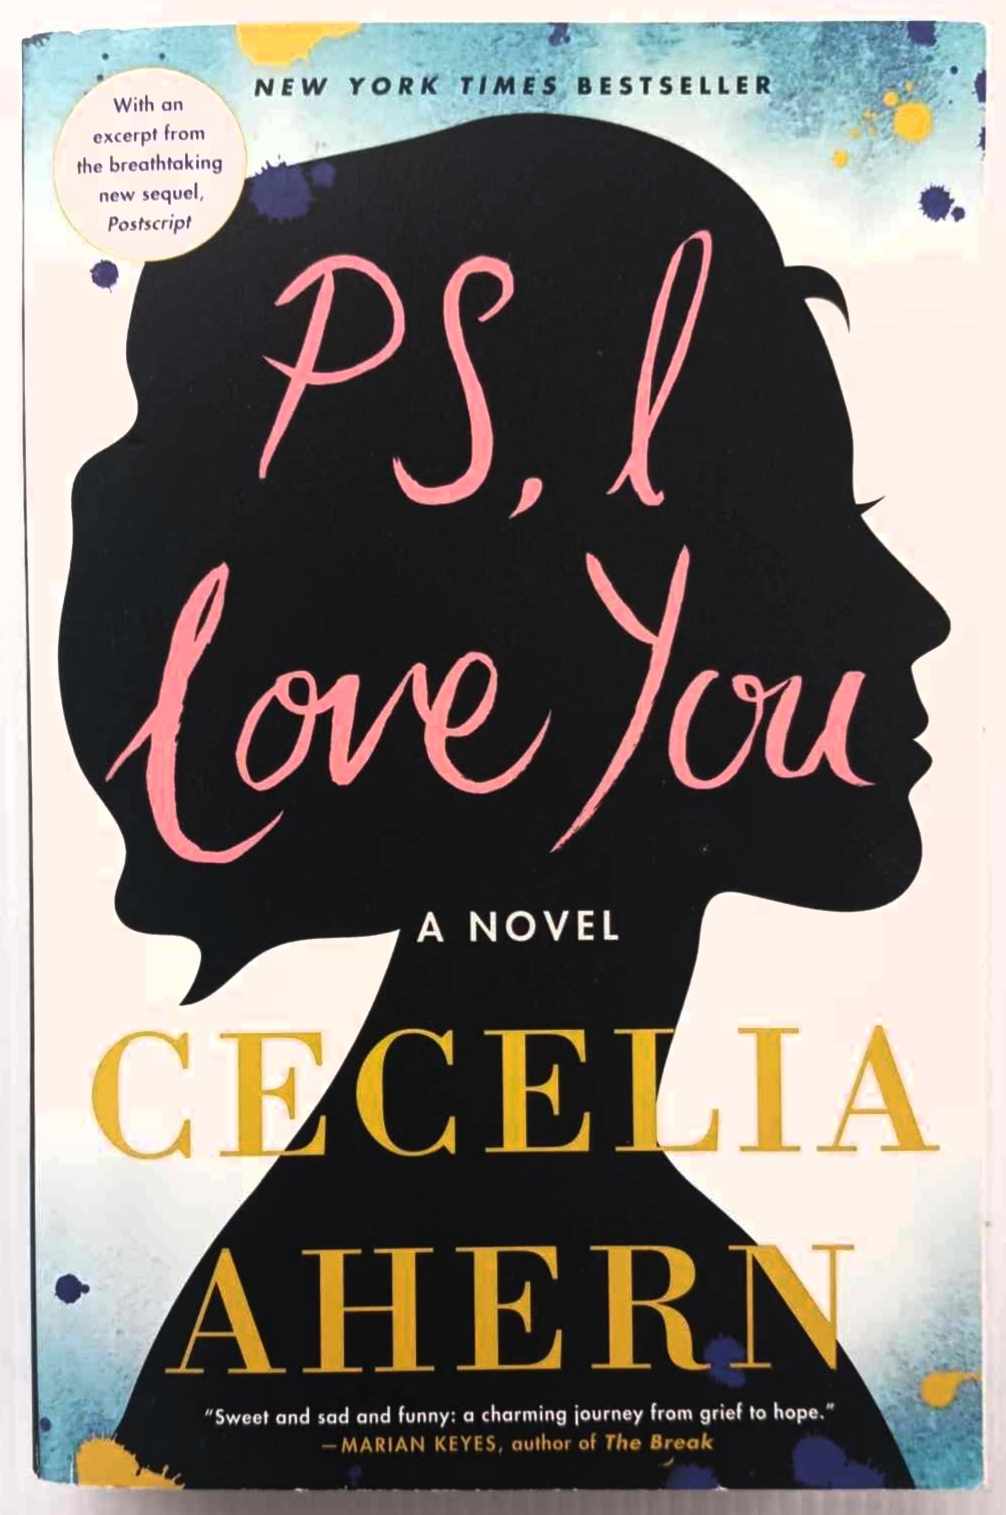 P.S. I LOVE YOU - Cecelia Ahern